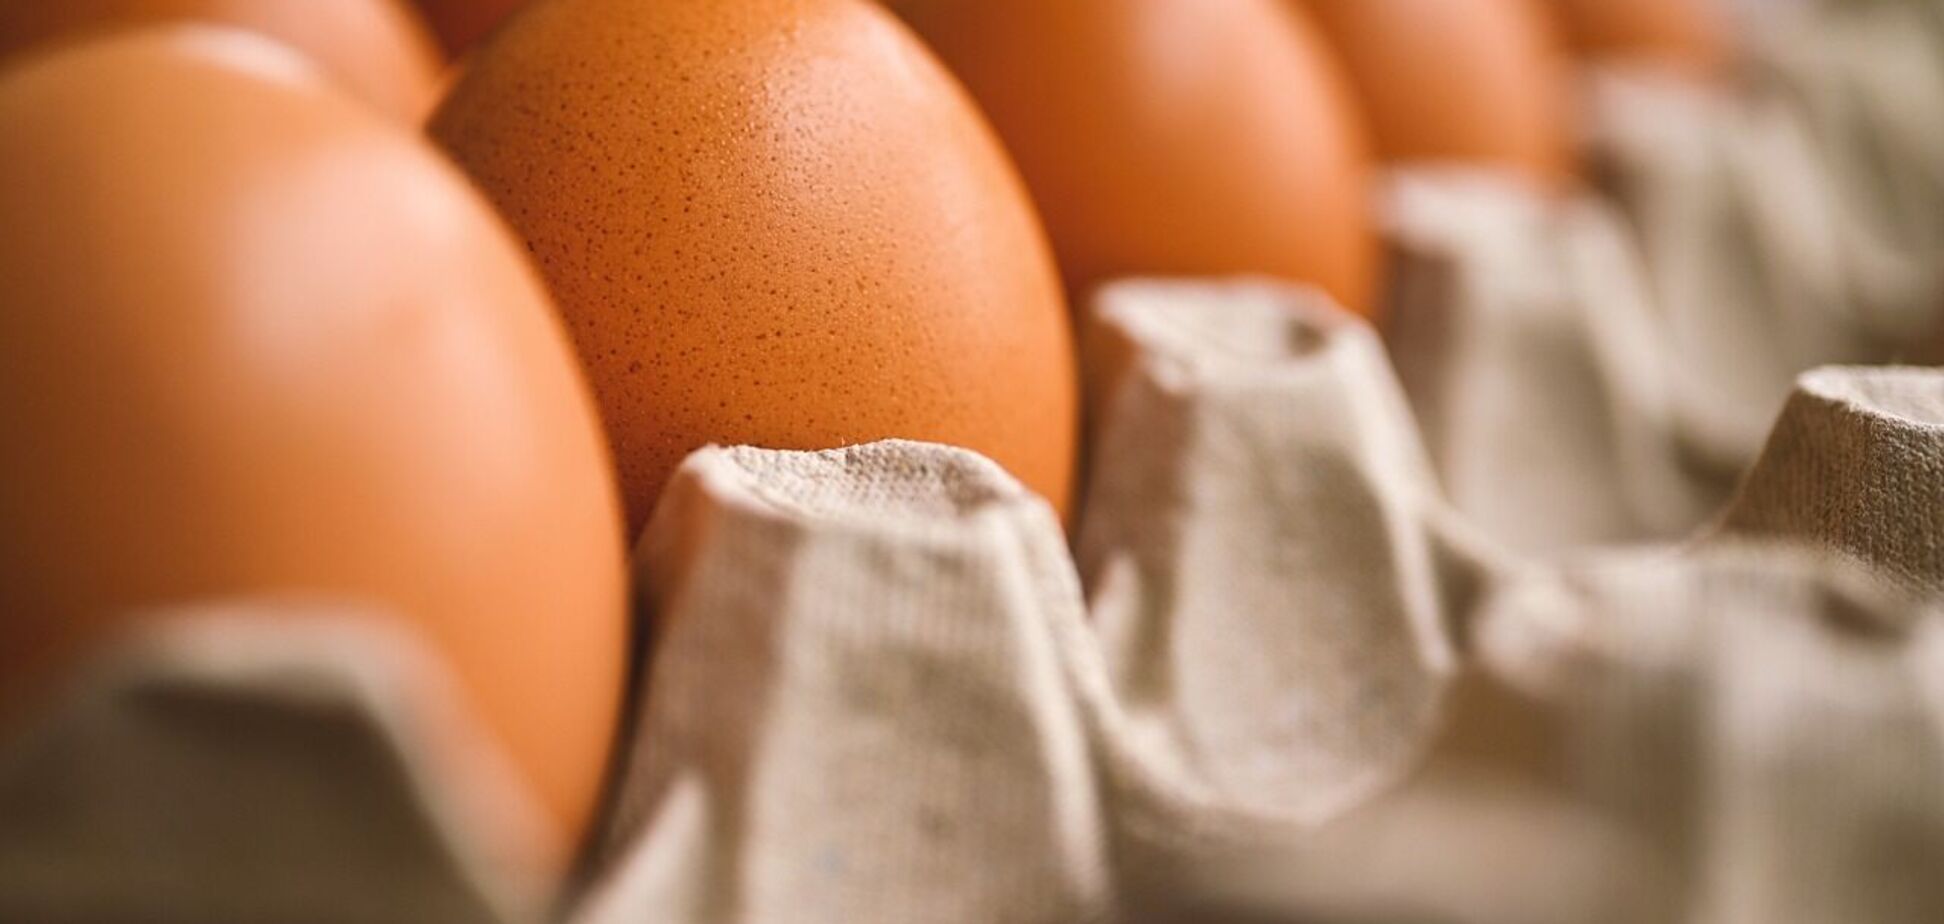 Действительно ли яйца полезны для здоровья человека: ответ врача